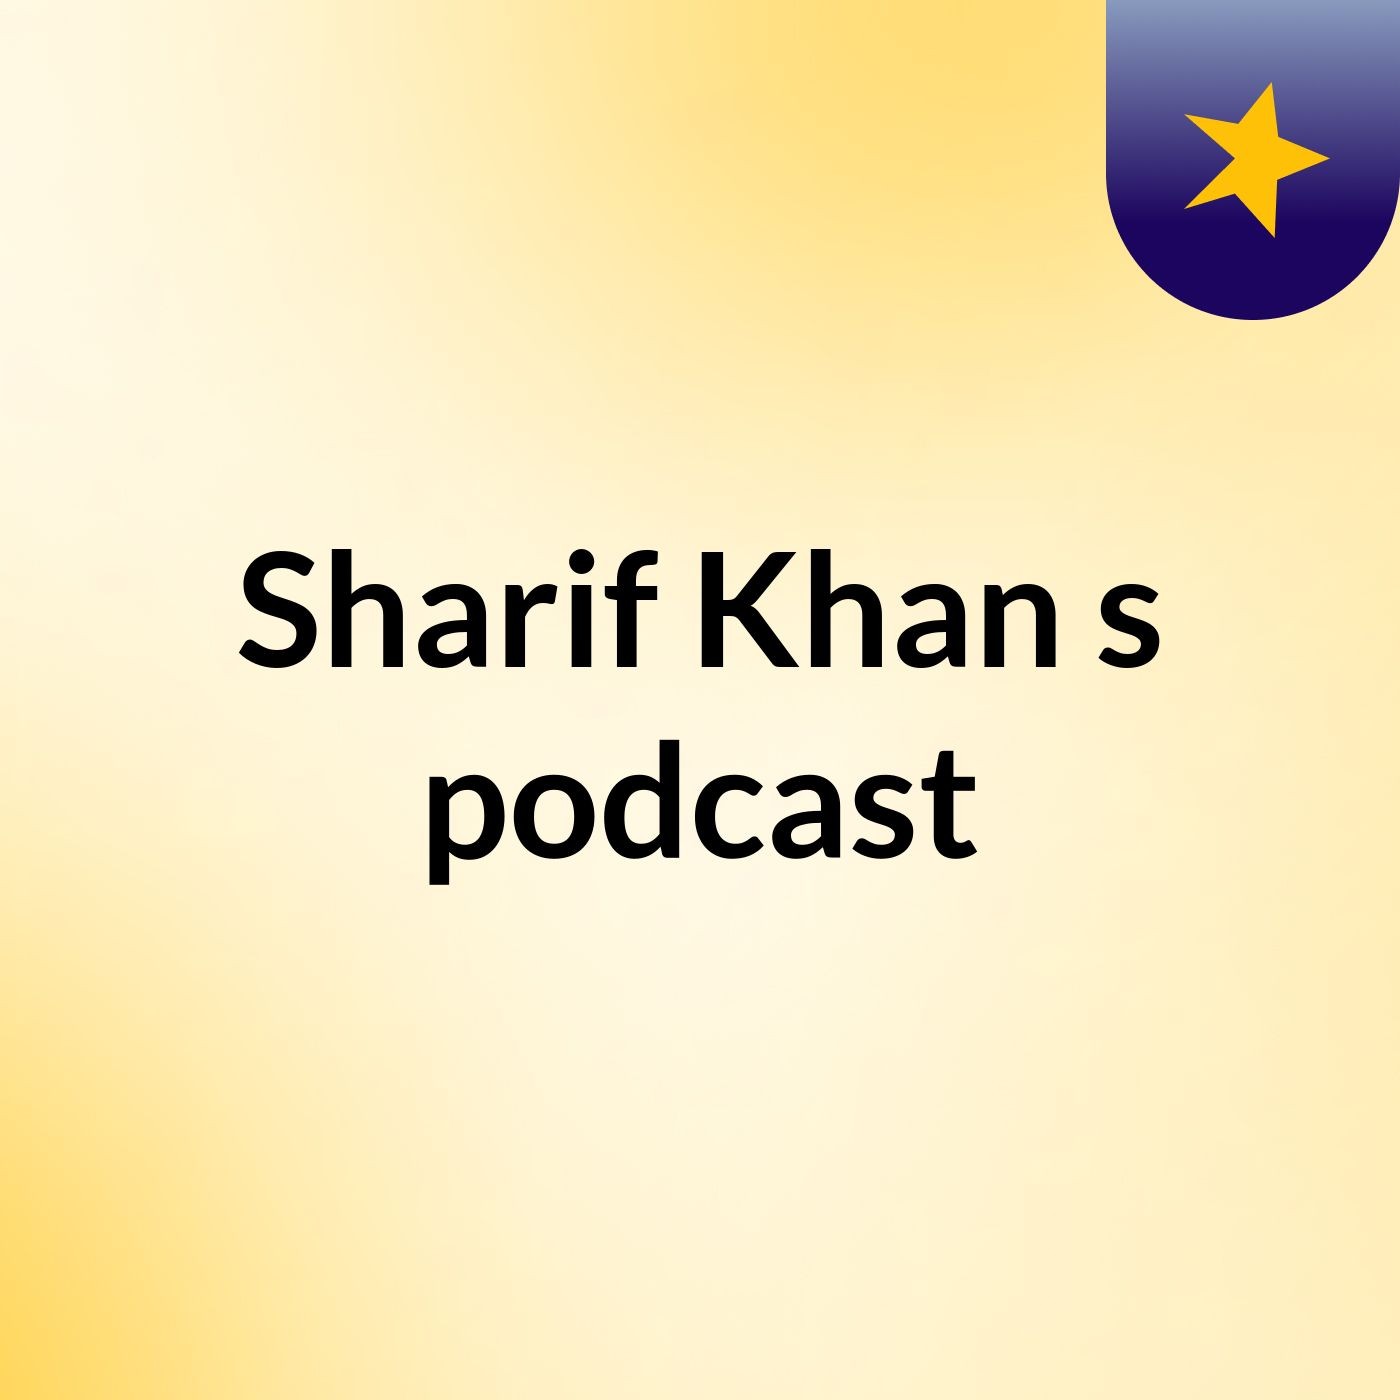 Sharif Khan's podcast